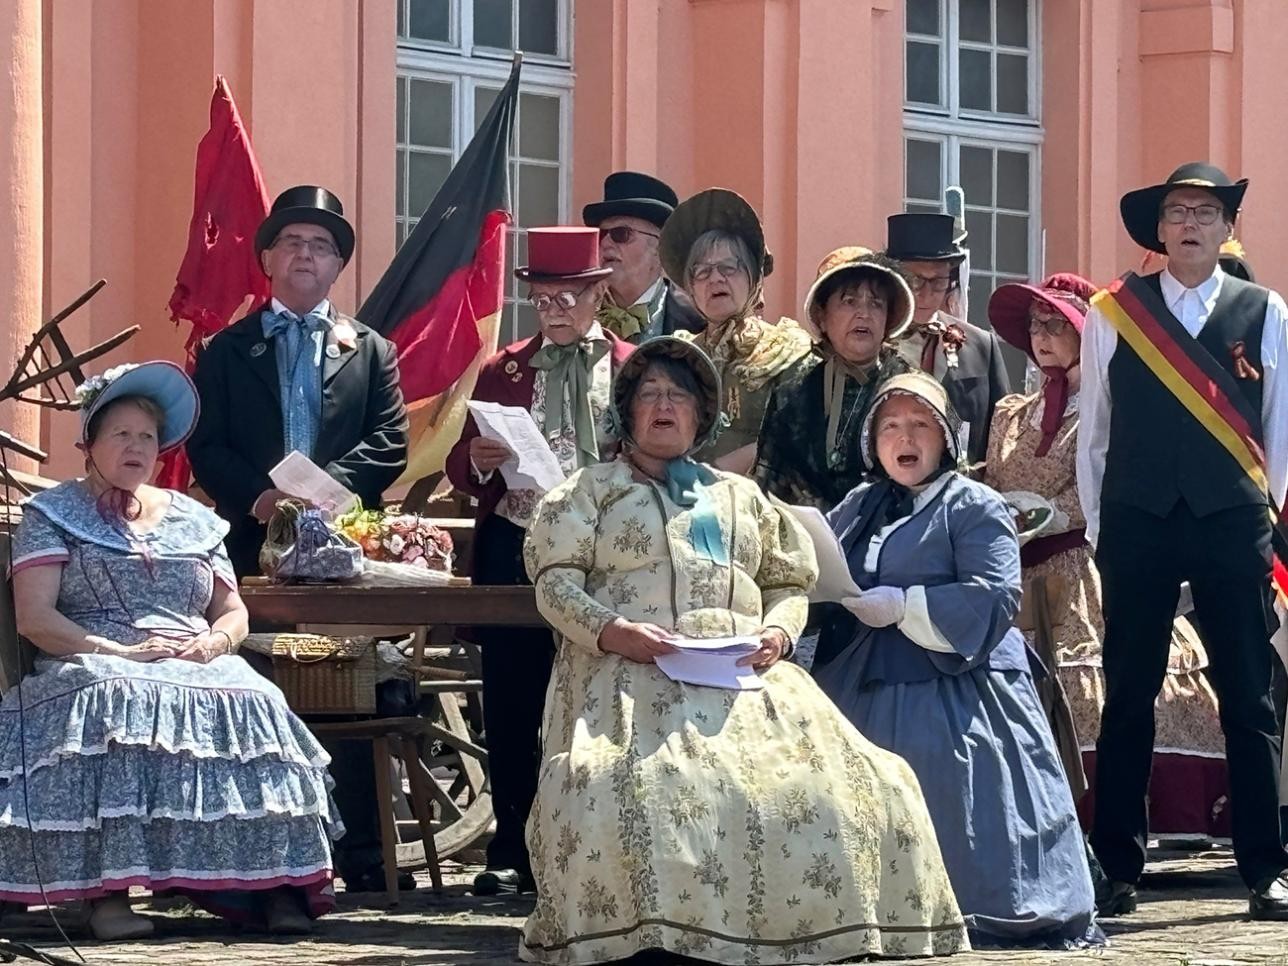 Schauspieler singen vor dem Schloss beim Schauspiel "Zeitreise in die Badische Revolution 1849"